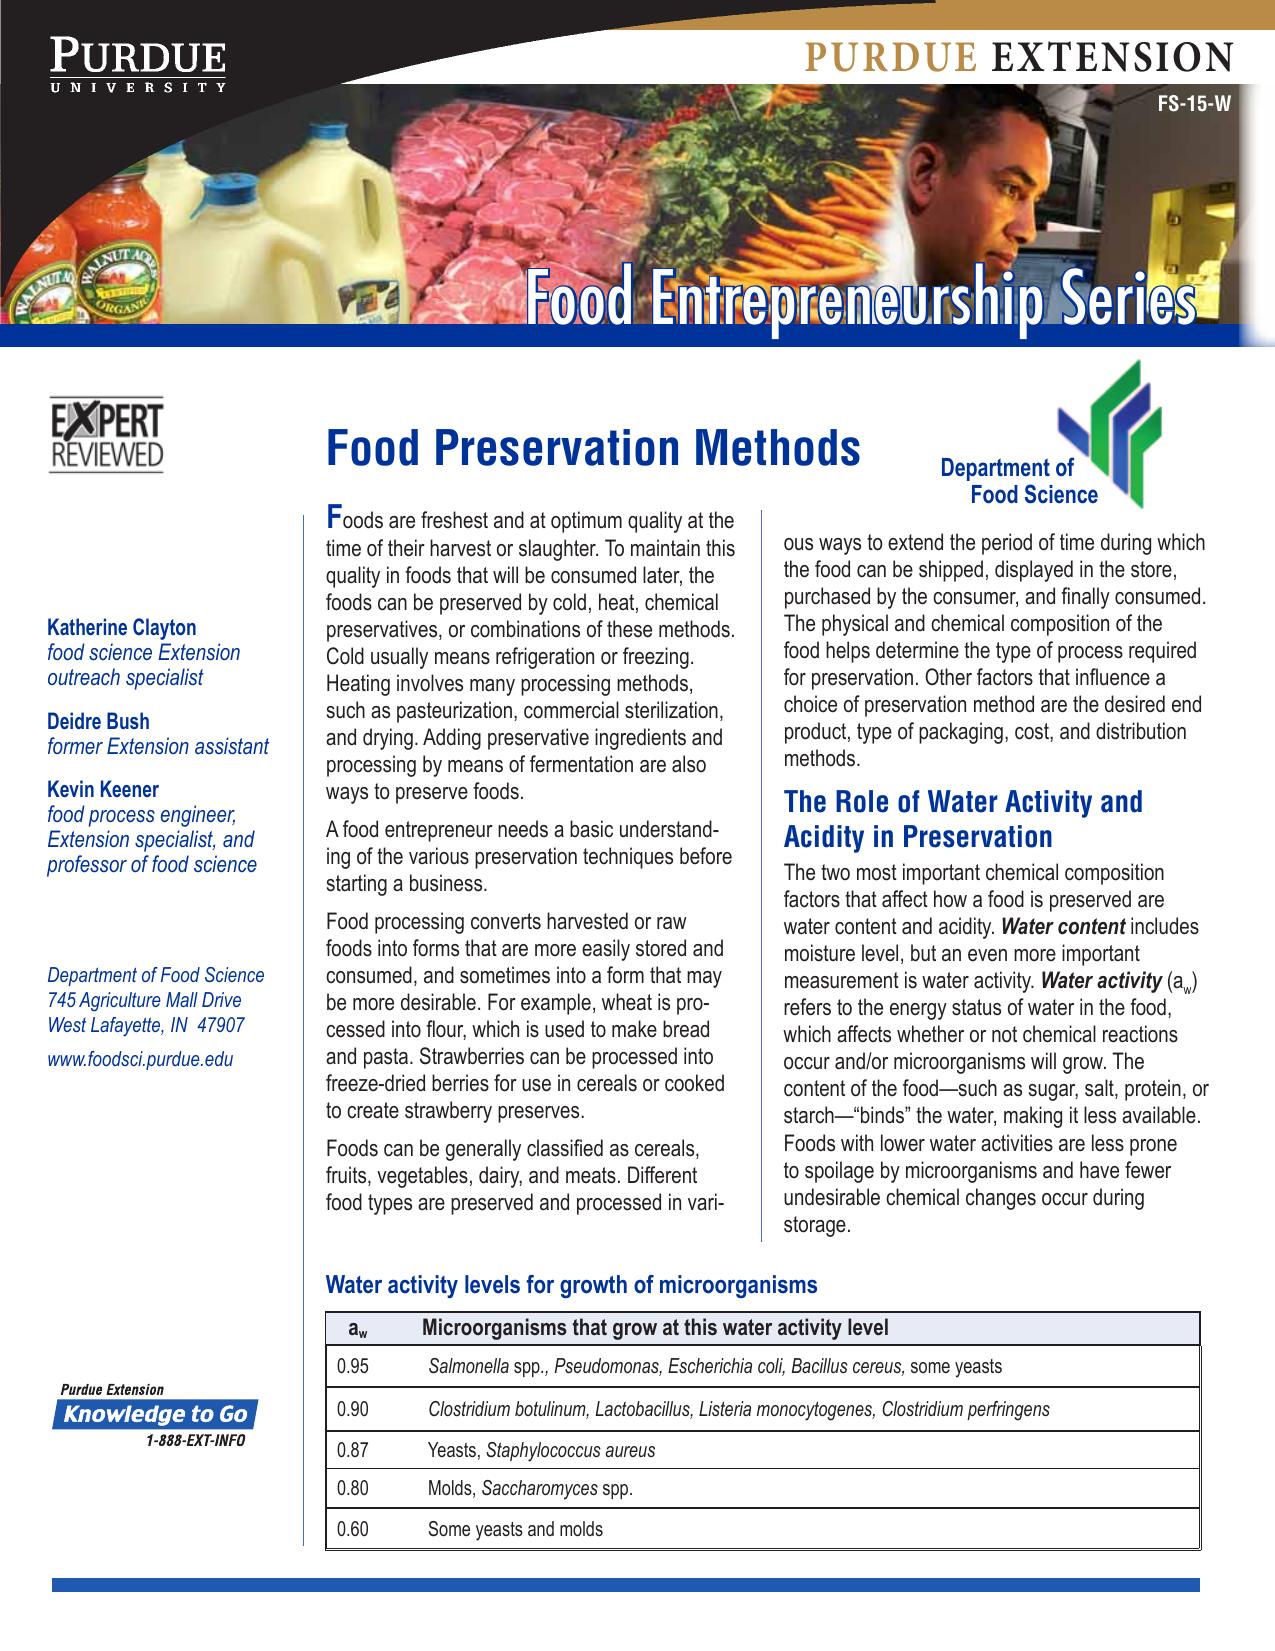 Food Preservation Methods